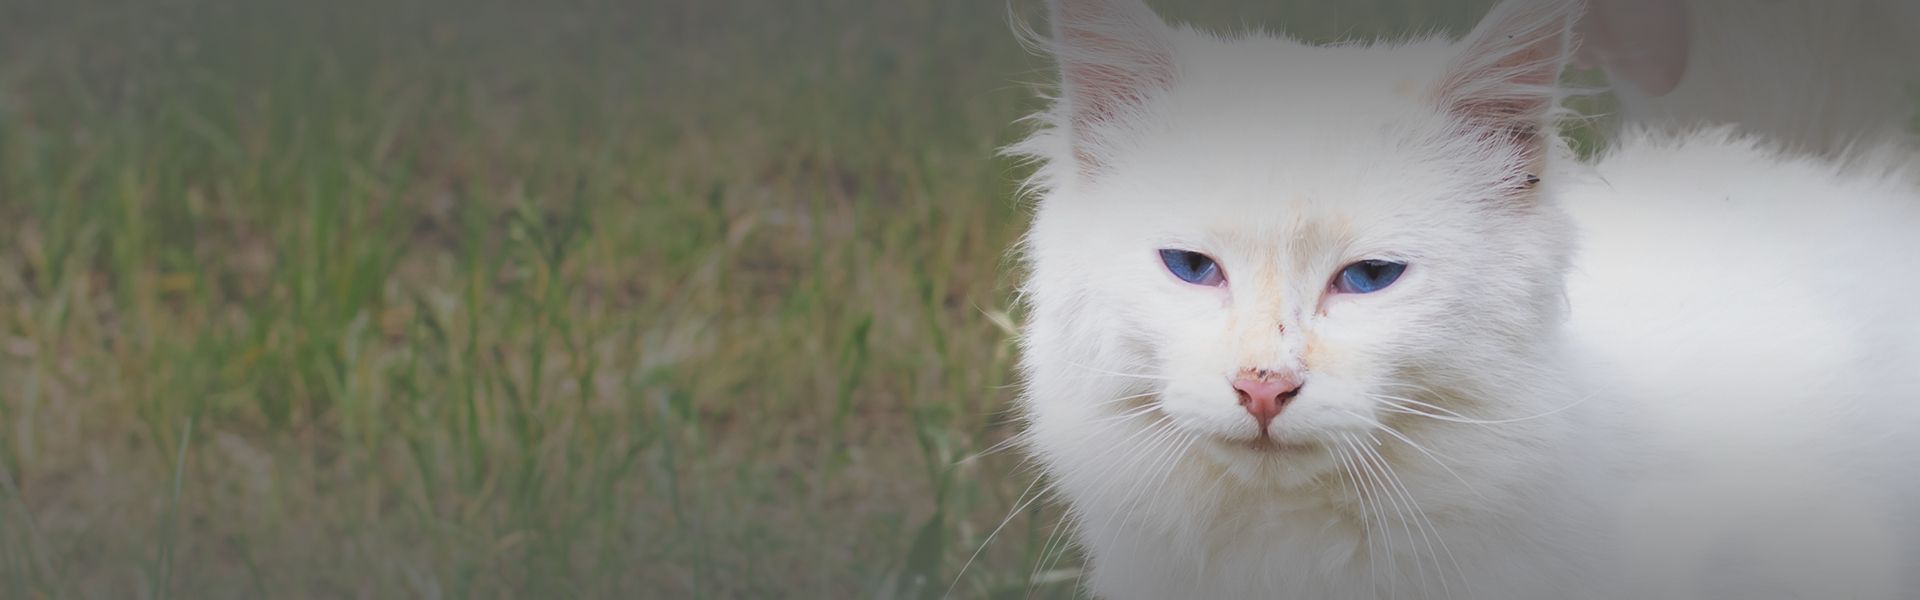 fluffy white stray cat